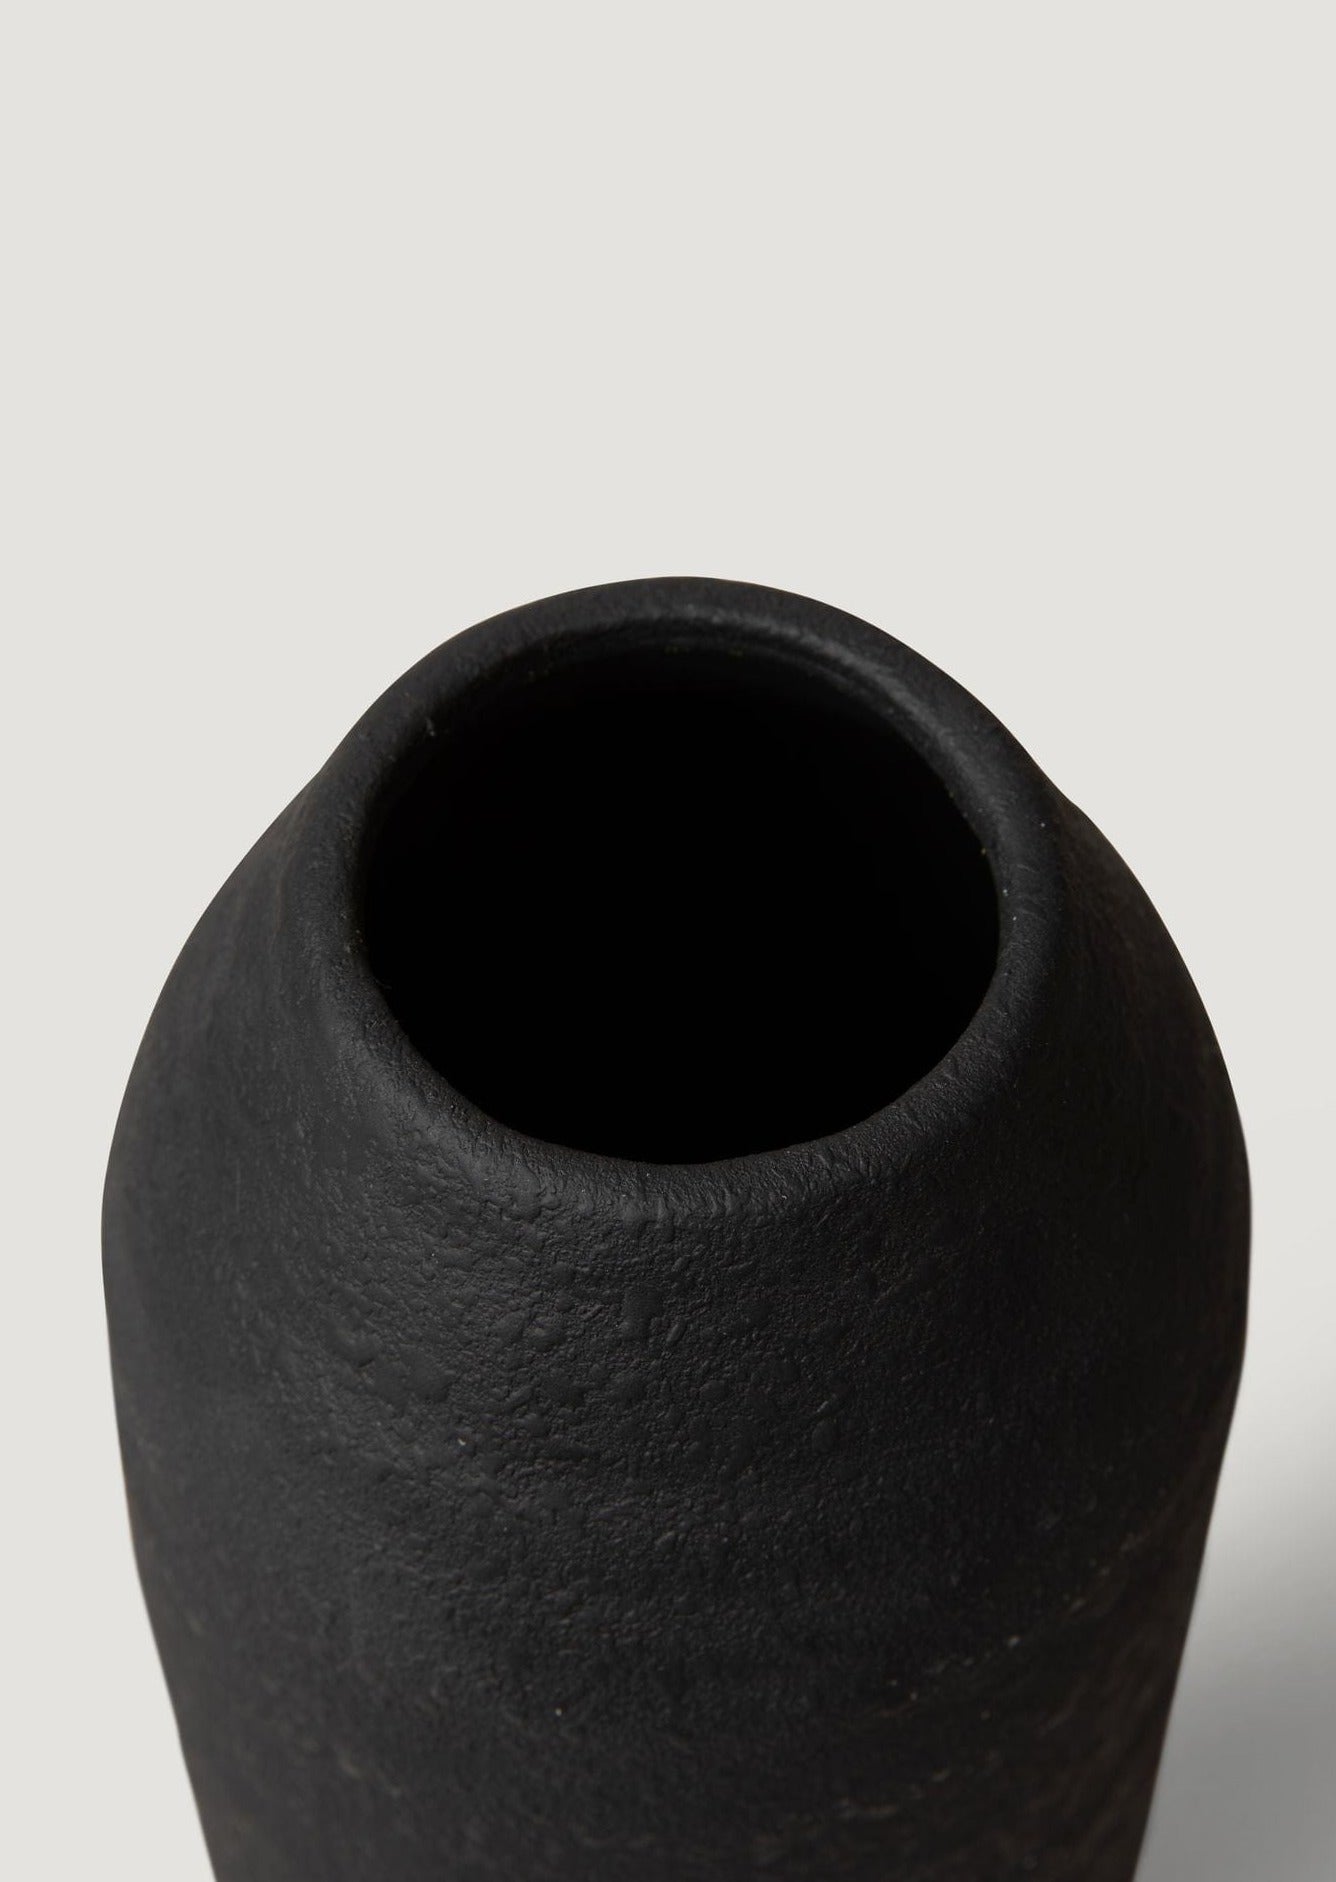 Top View of Geena Vase in Glazed Black Ceramic